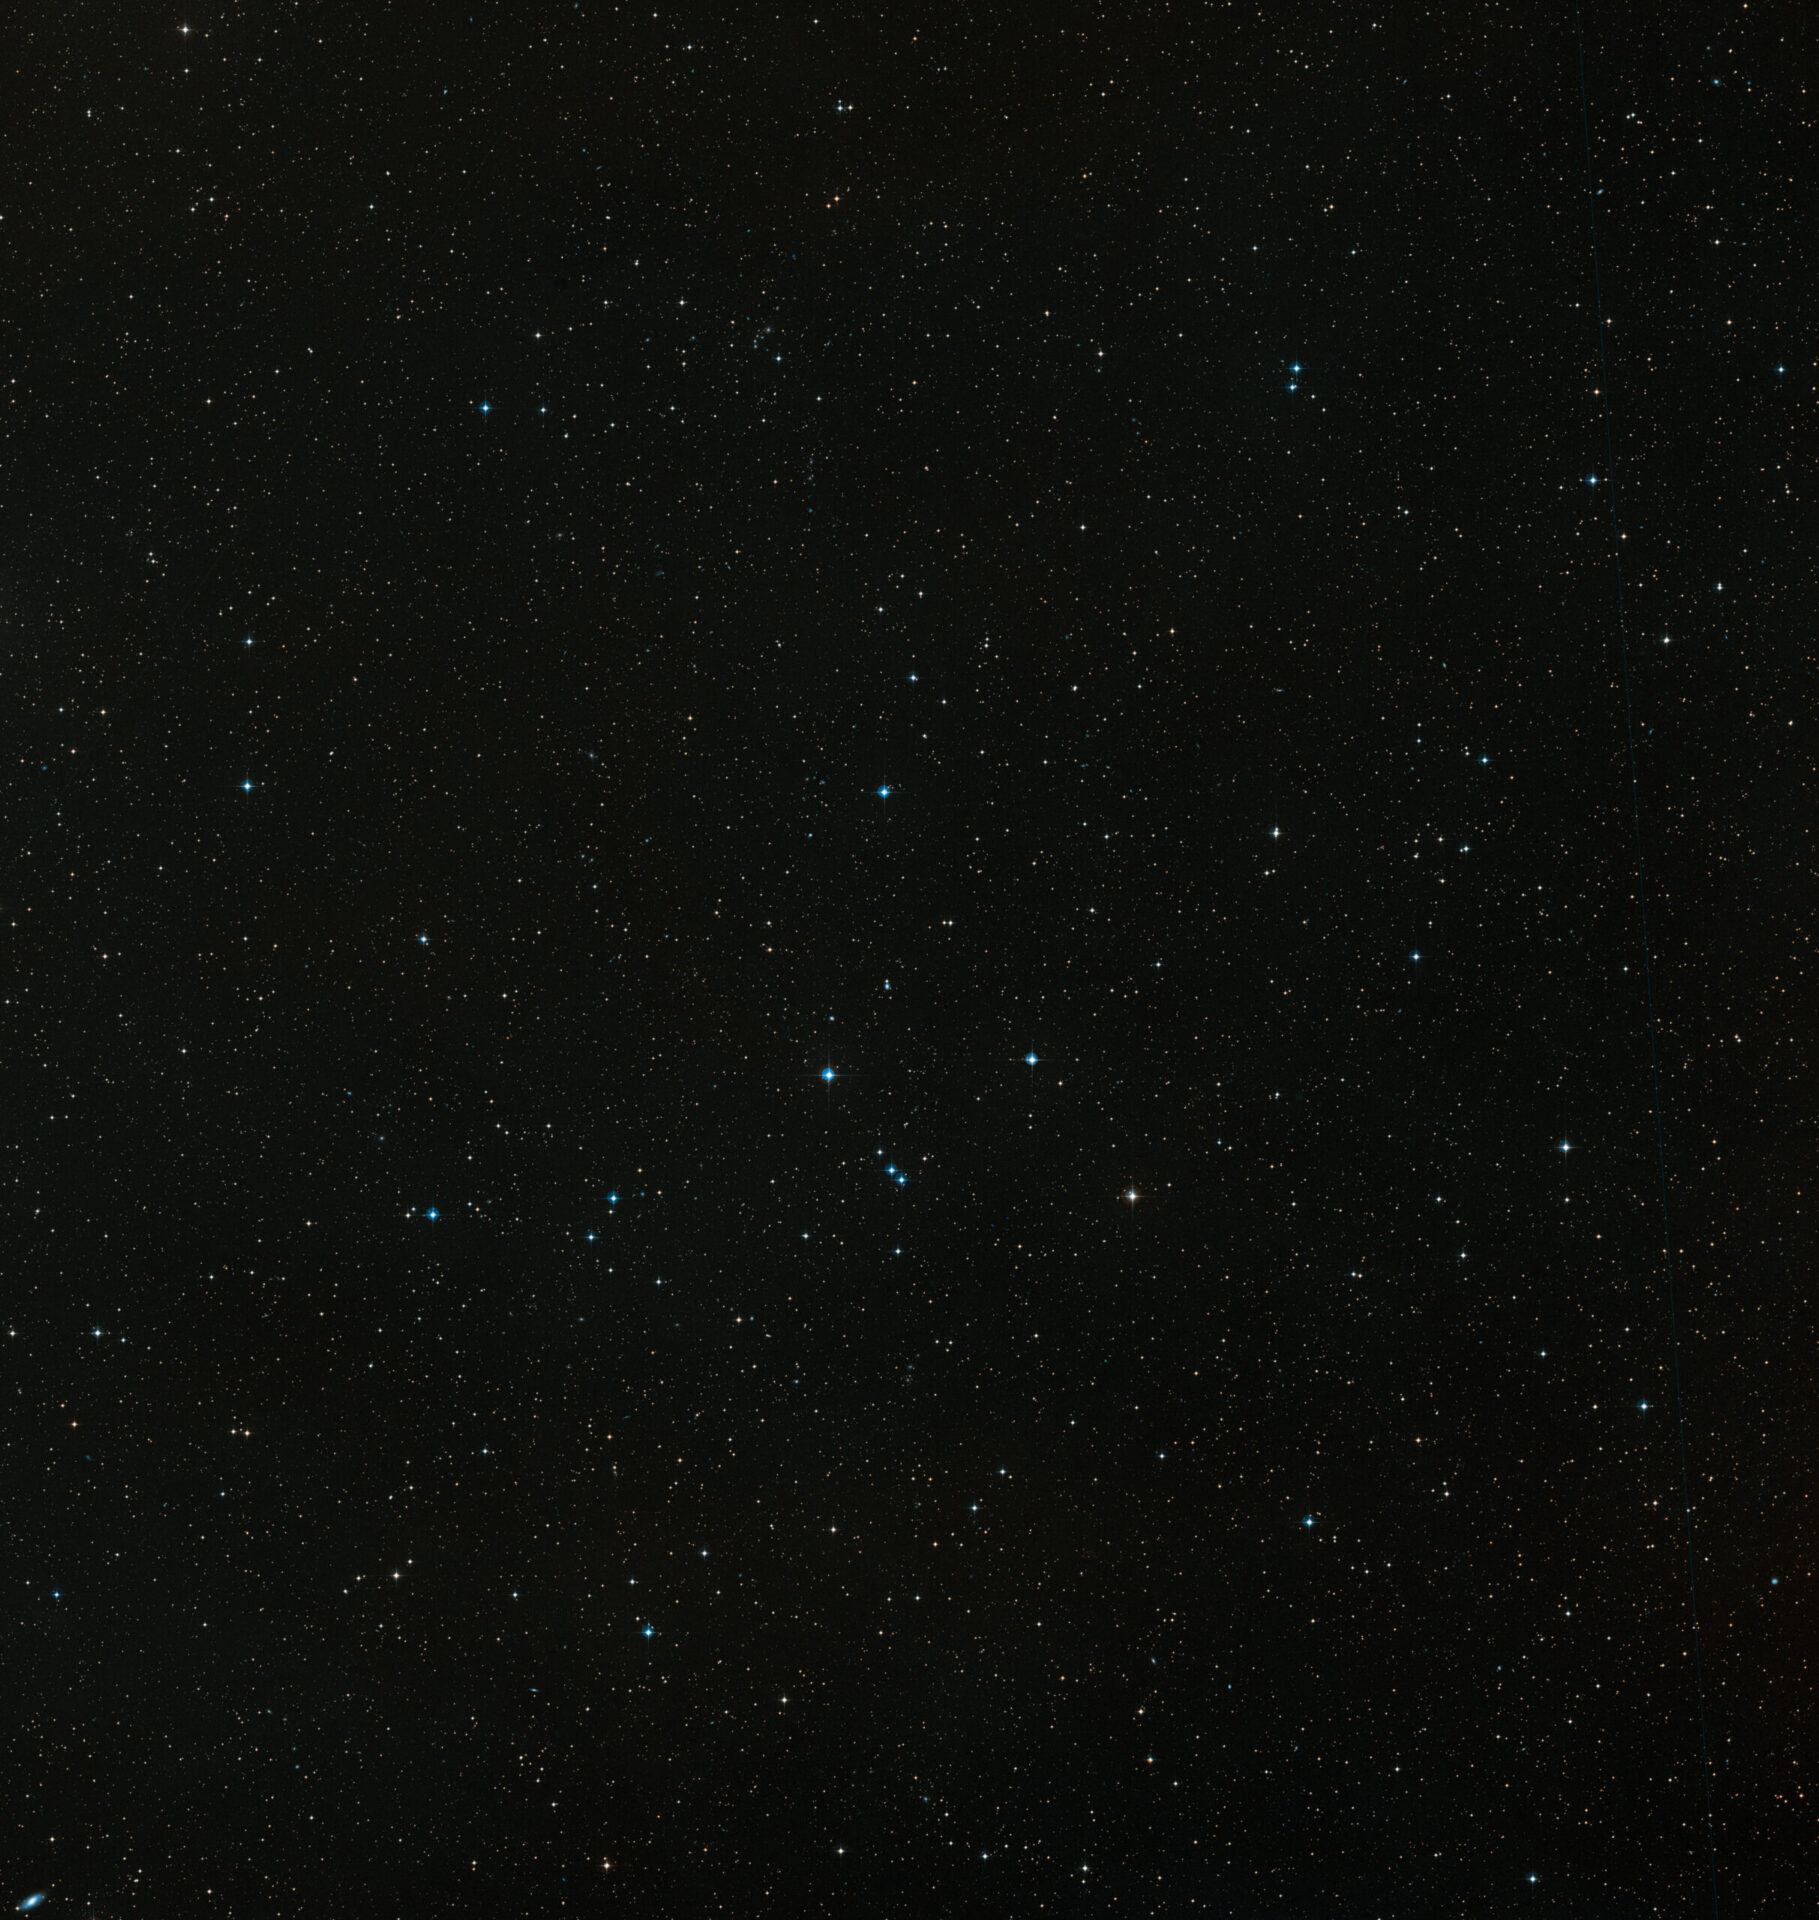 Esta imagen es una composición de color hecha a partir de las exposiciones del sondeo Digitized Sky Survey 2 (DSS2). El campo de visión es de 2,8 x 2,9 grados. Crédito: Digitized Sky Survey 2 and ESA/Hubble. ESA/Hubble and Digitized Sky Survey 2. Acknowledgement: Davide De Martin (ESA/Hubble)